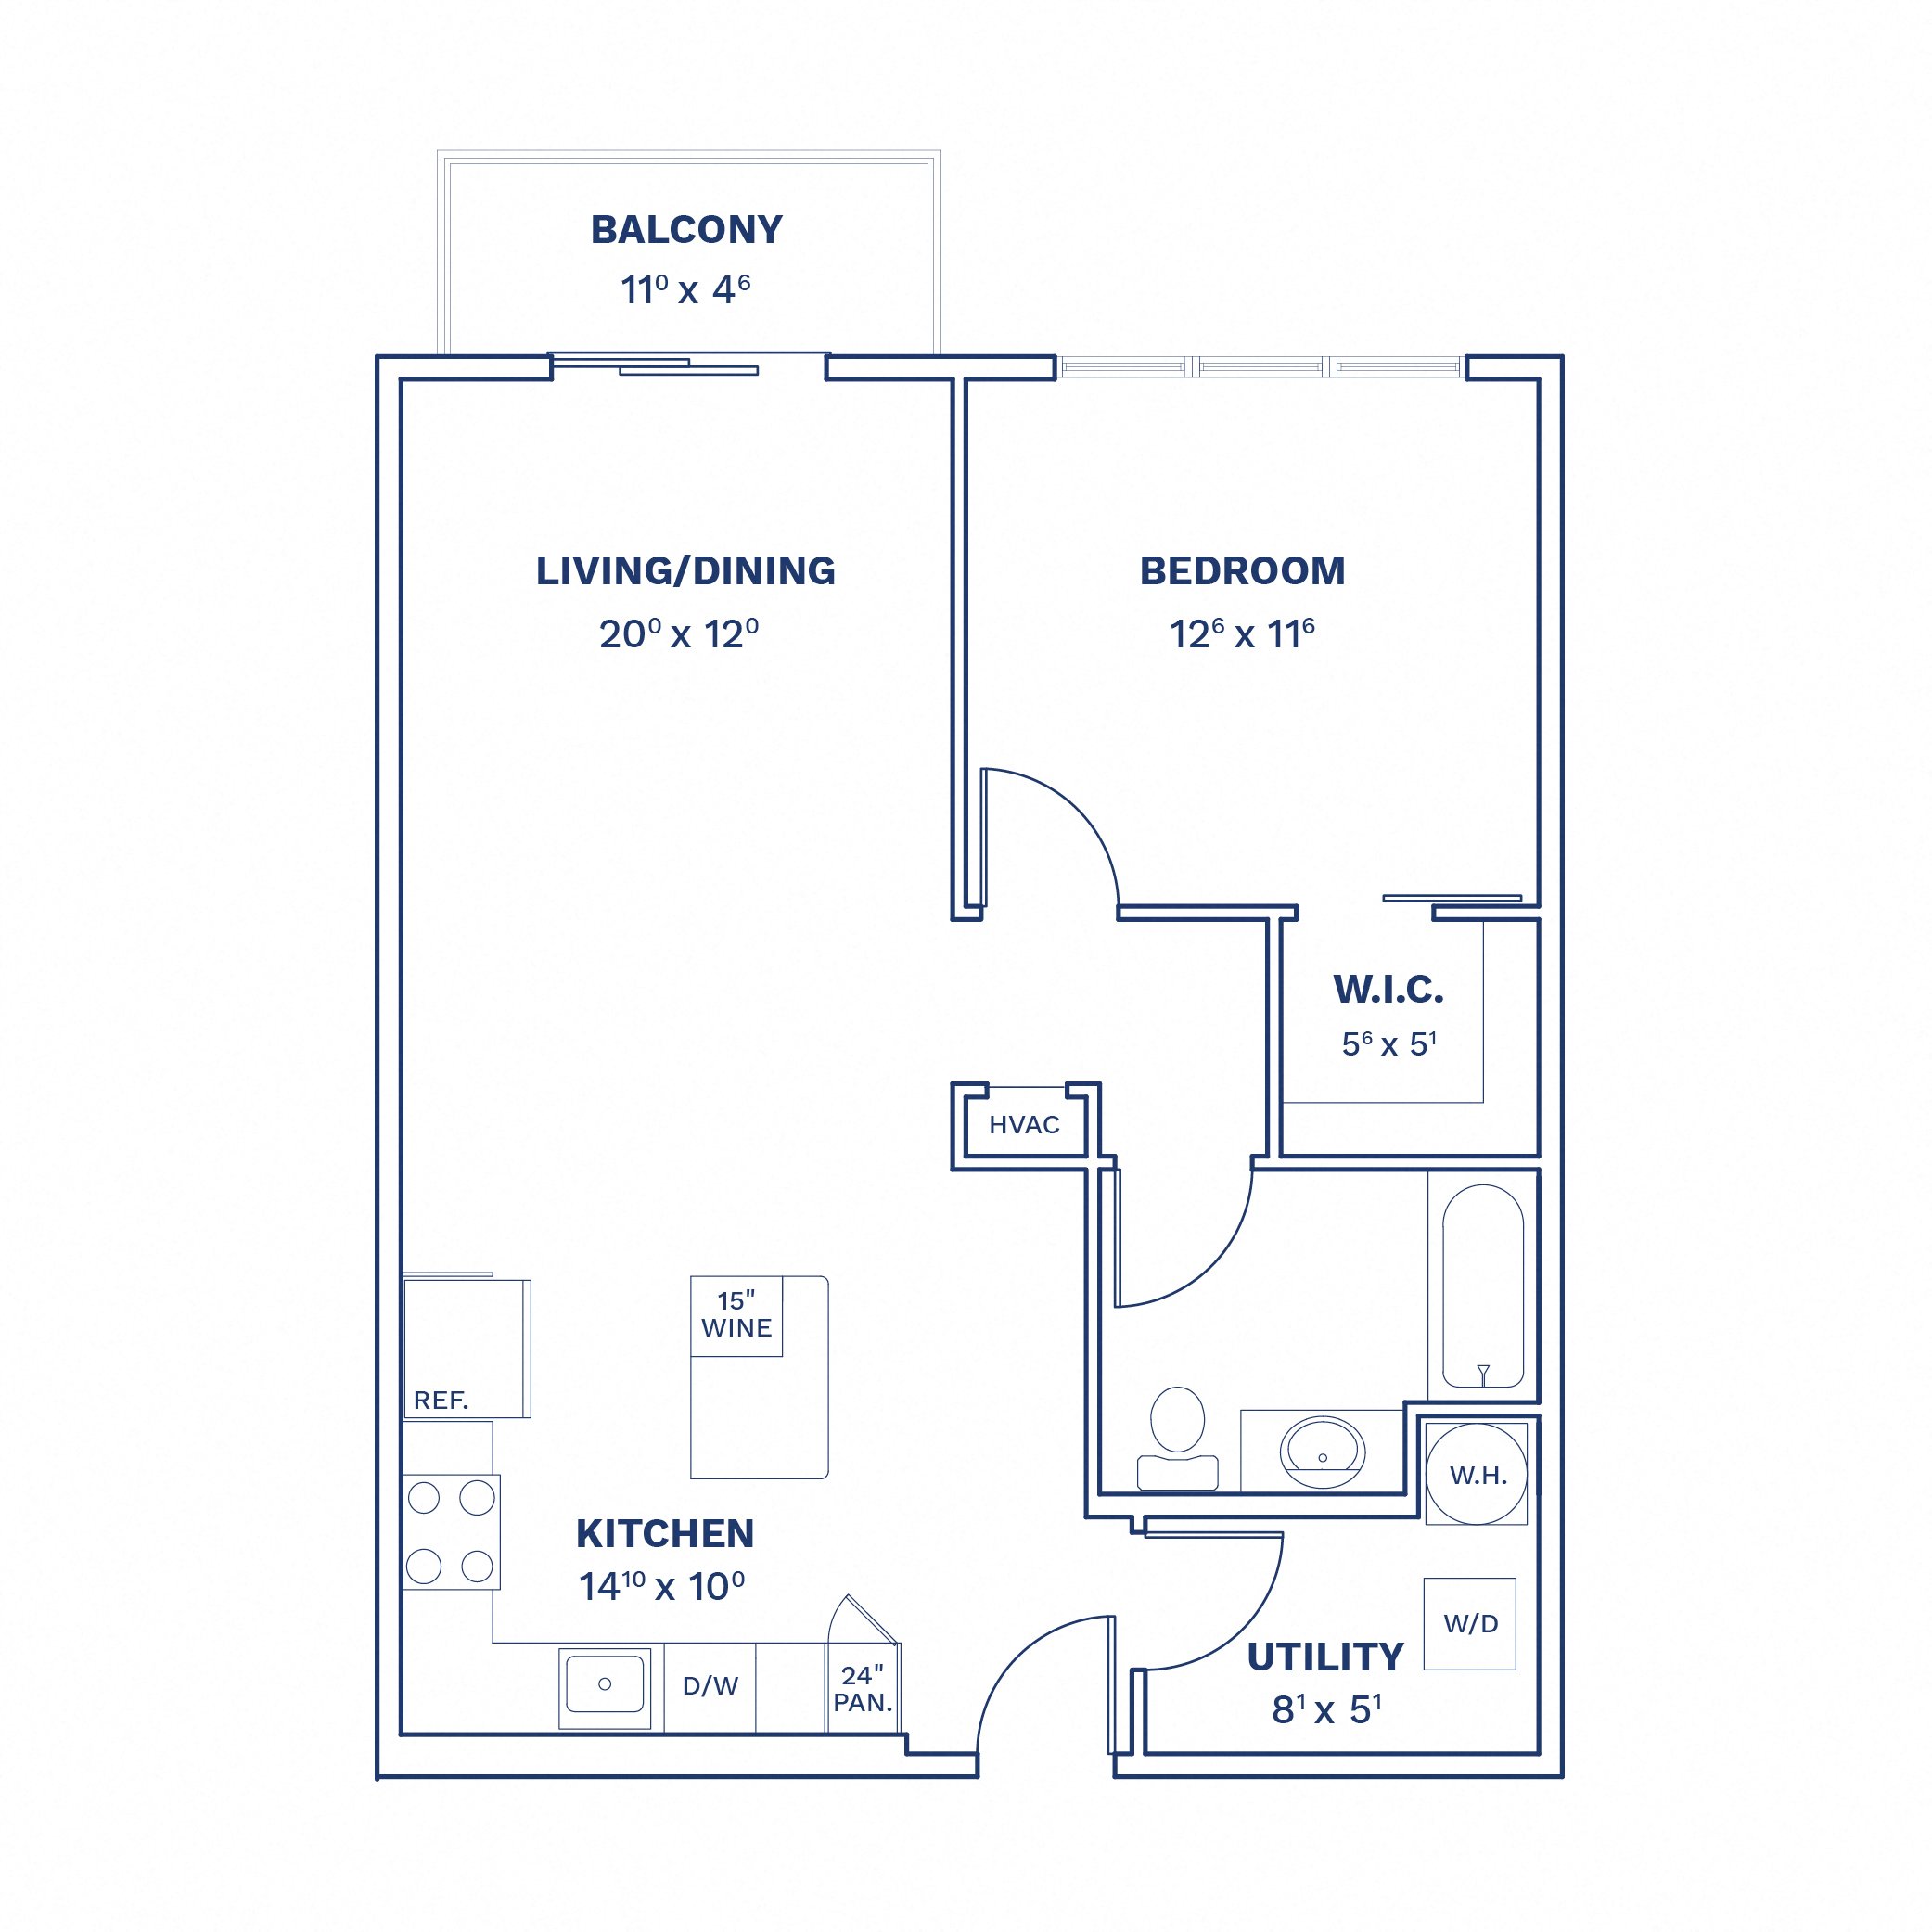 Floorplan of Unit 1 Bed/1 Bath-A2